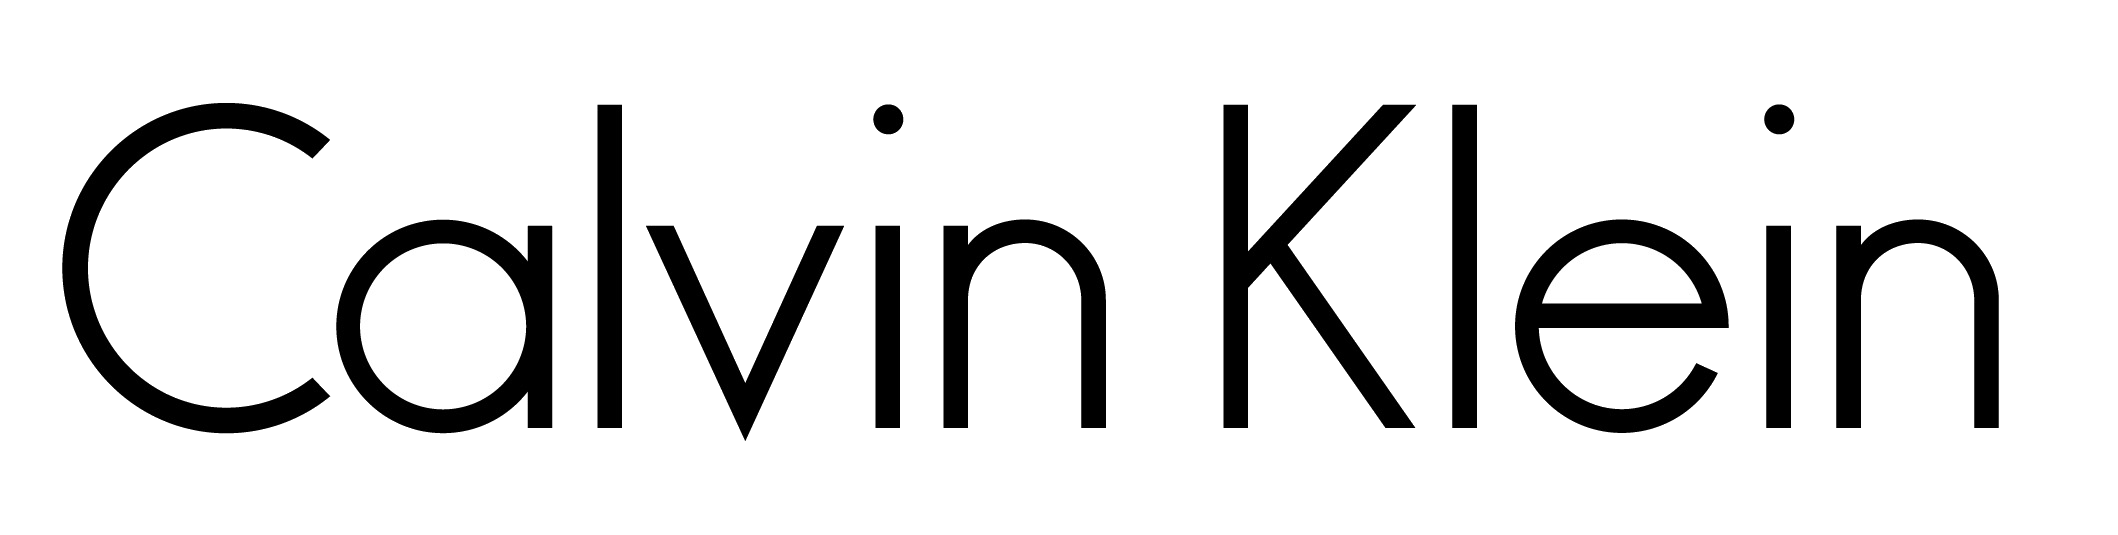 Calvin Klein Logo | The Most 